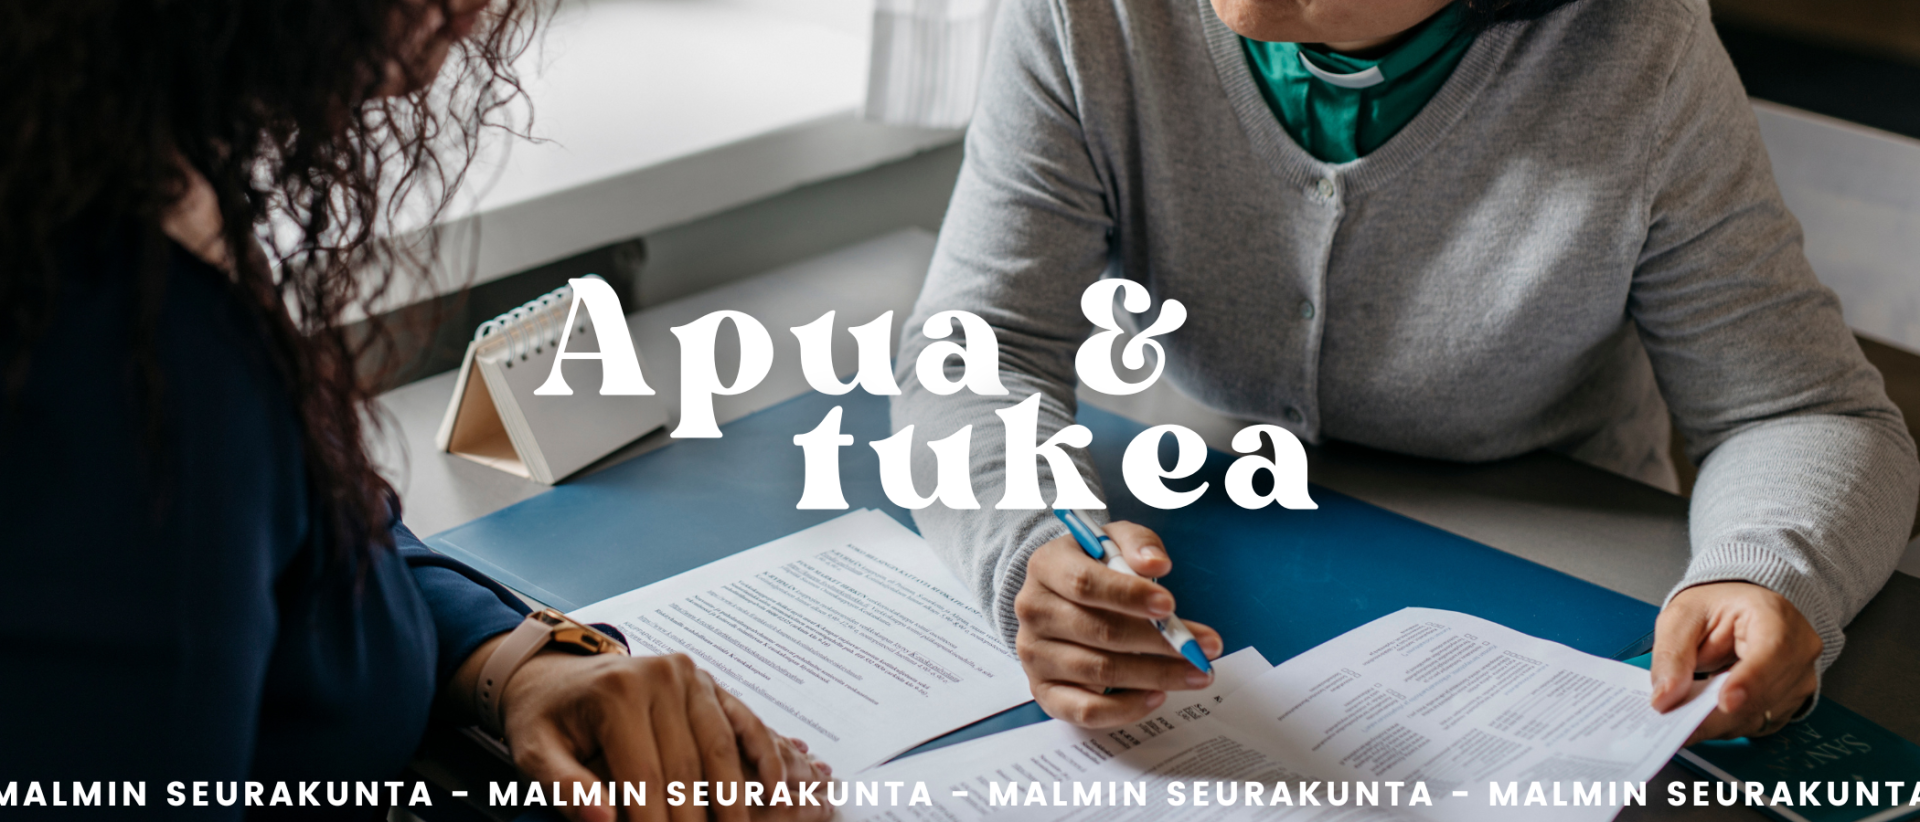 Apua ja tukea Malmin seurakunta, kuvassa kaksi ihmistä työpöydän molemmin puolin, täytetään papereita